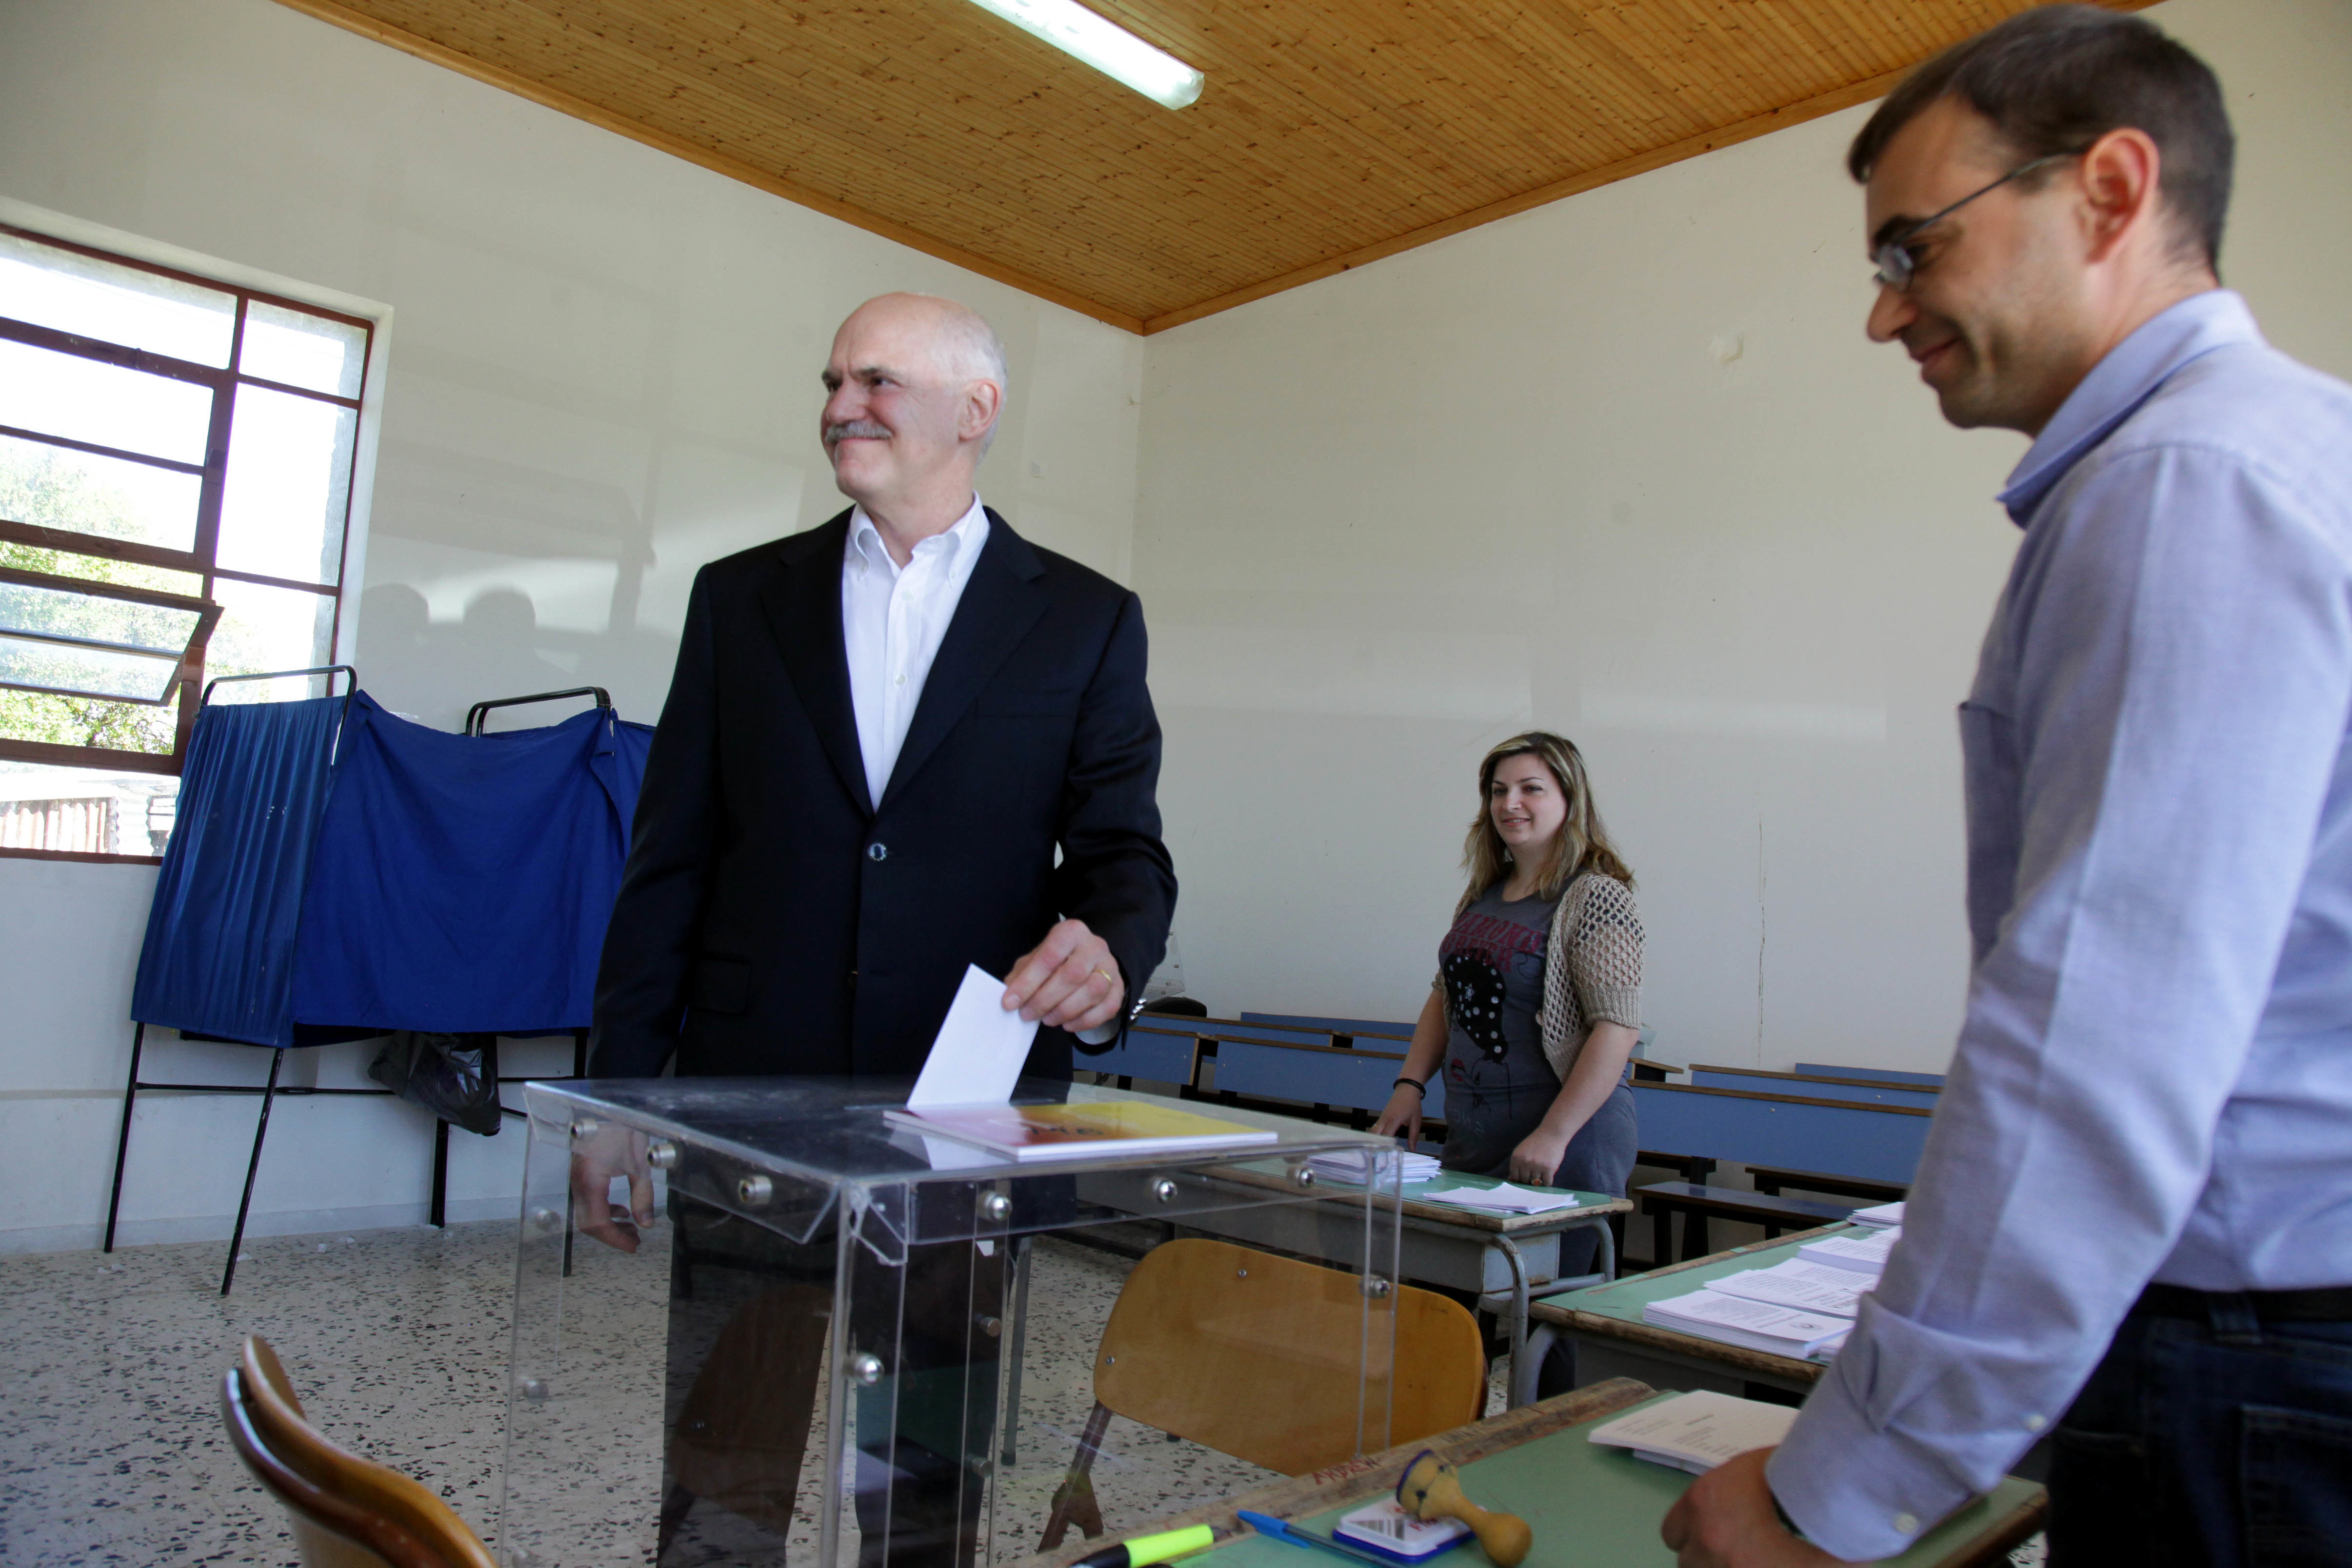 Εκλογές 2014: Ηγετική εμφάνιση και δήλωση – μανιφέστο από τον Γ. Παπανδρέου – Αφήνει όλα τα ενδεχόμενα ανοιχτά για την επομένη των εκλογών